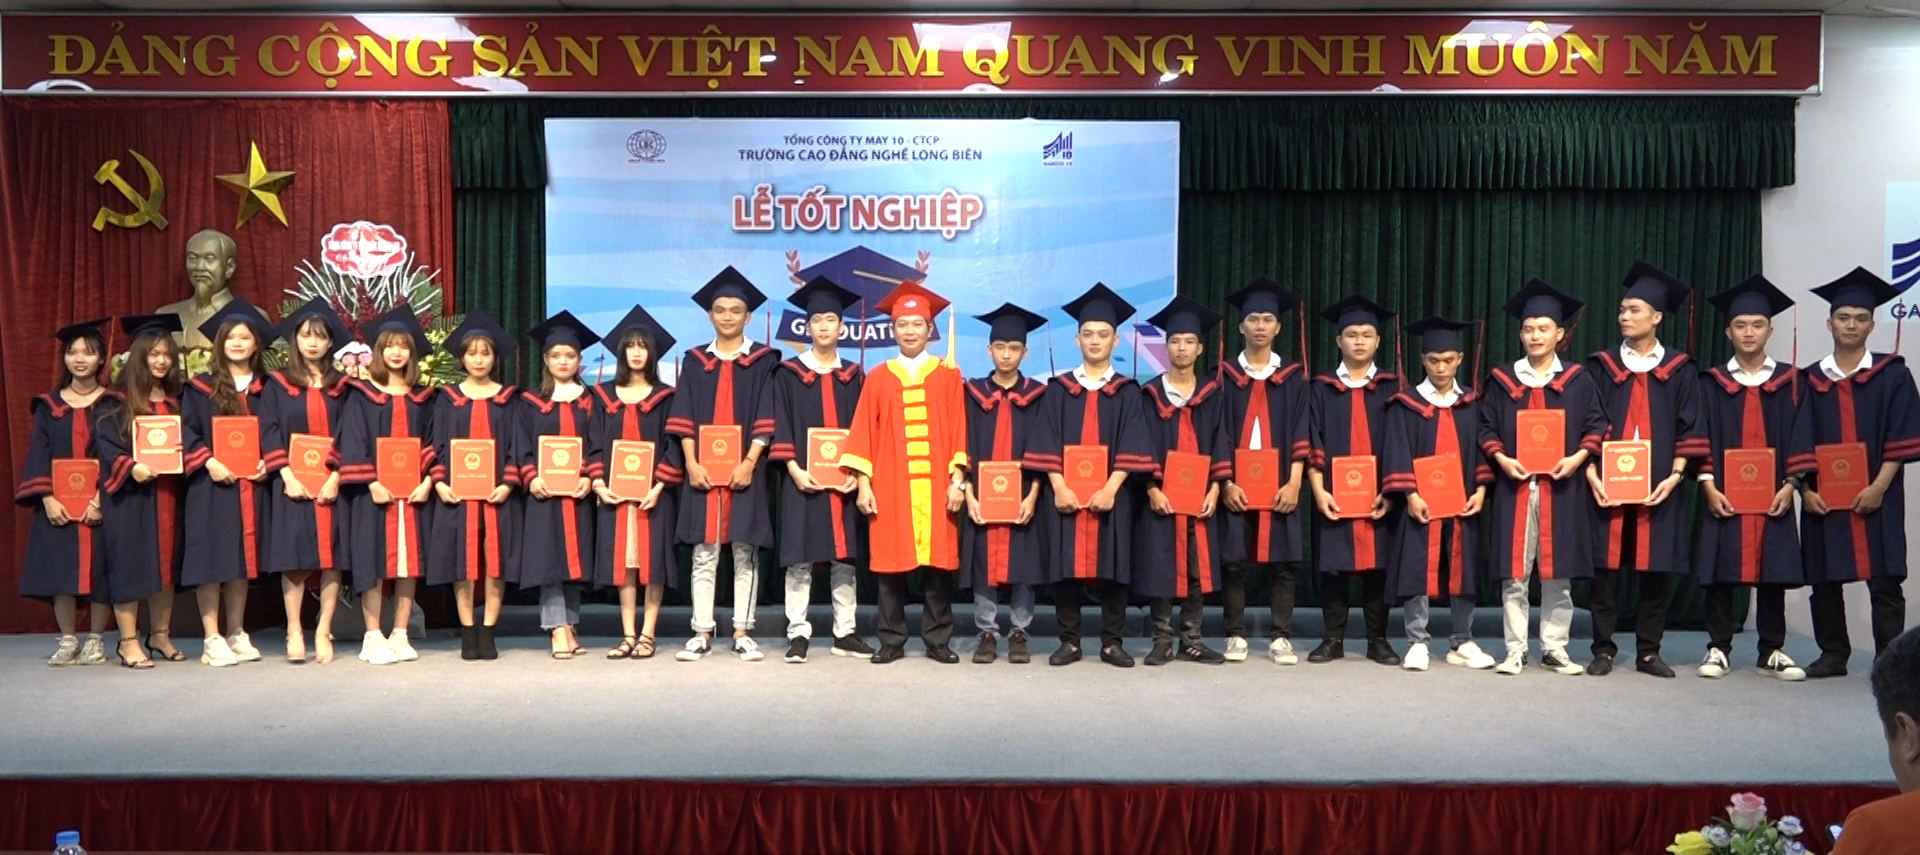 Cao đẳng nghề Long Biên trao bằng tốt nghiệp cho sinh viên khóa 43 và 44